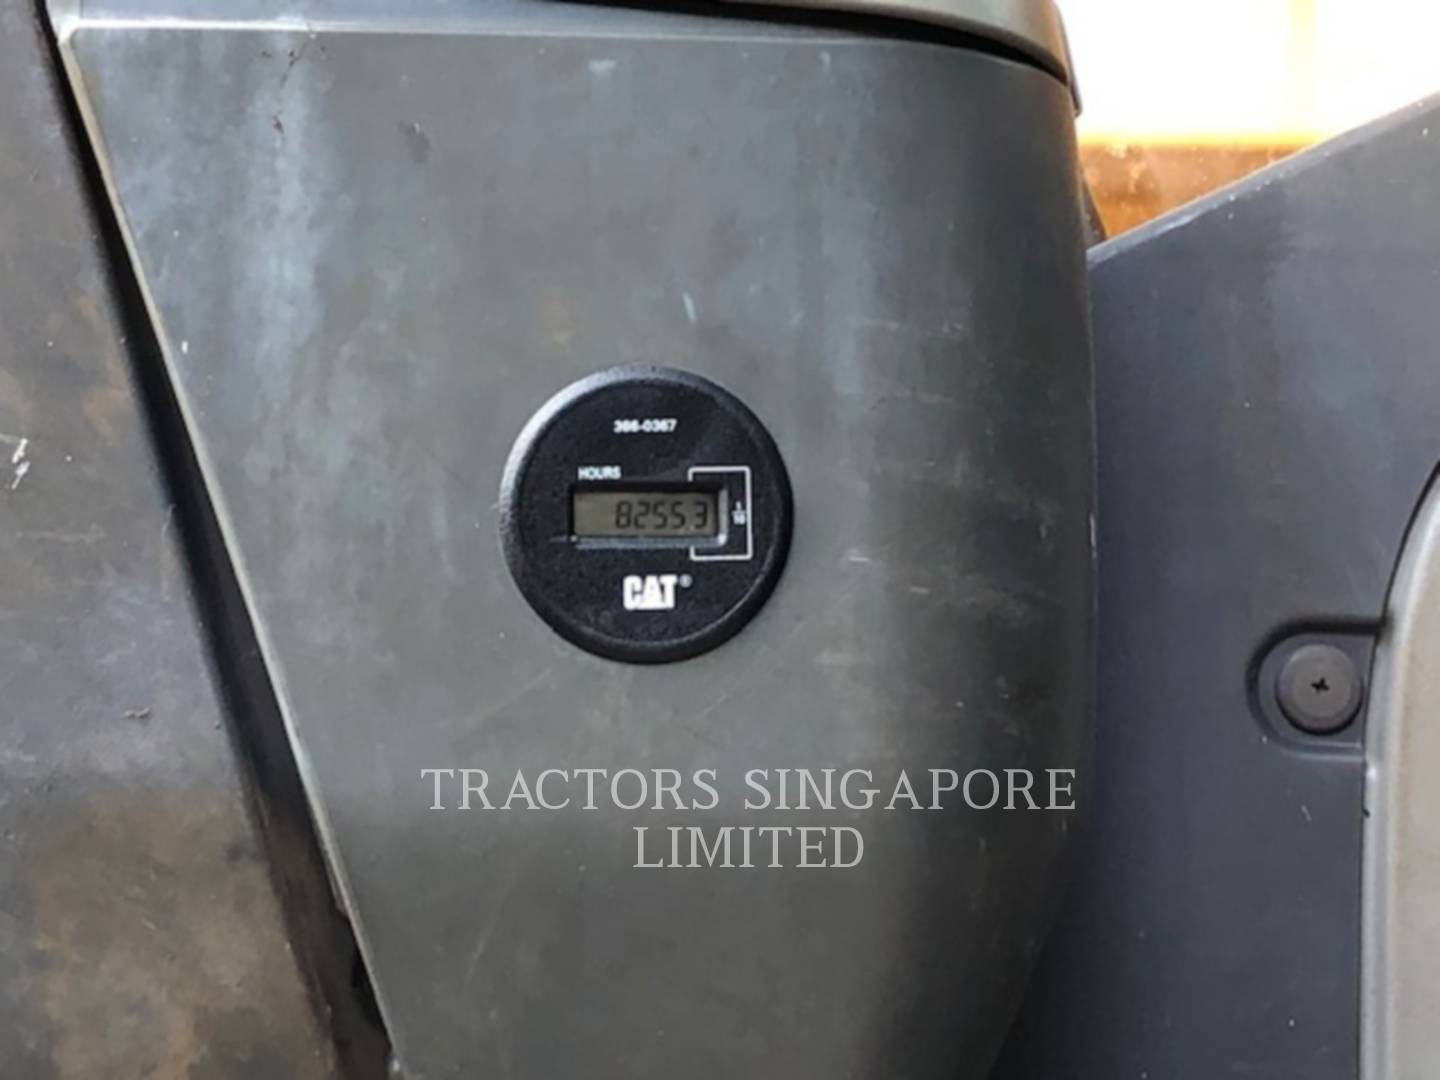 wtk?JHNyYz1lY2MzYTIyMmE4YTY2ZTM0YmY0NDllMjc0Yjc1MGQyMCYkdHh0PVRSQUNUT1JTJTIwU0lOR0FQT1JFJTIwTElNSVRFRCY0ODA3NA== 336DL | Tractors Singapore